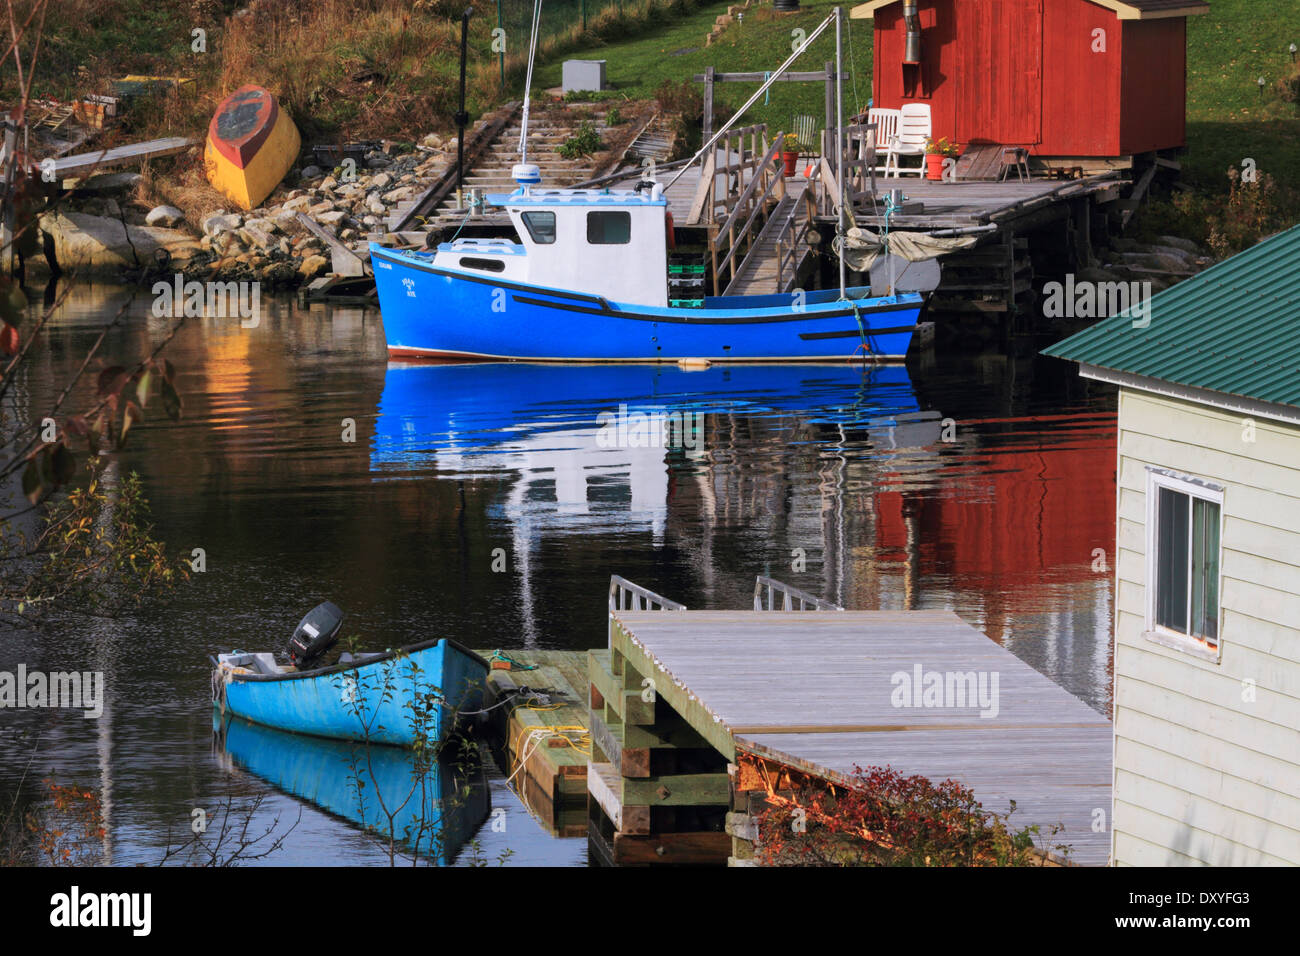 Bateau de pêche et d'autres au repos dans un cadre paisible - entrée d'Herring Cove, Halifax, Nouvelle-Écosse, Canada. Banque D'Images